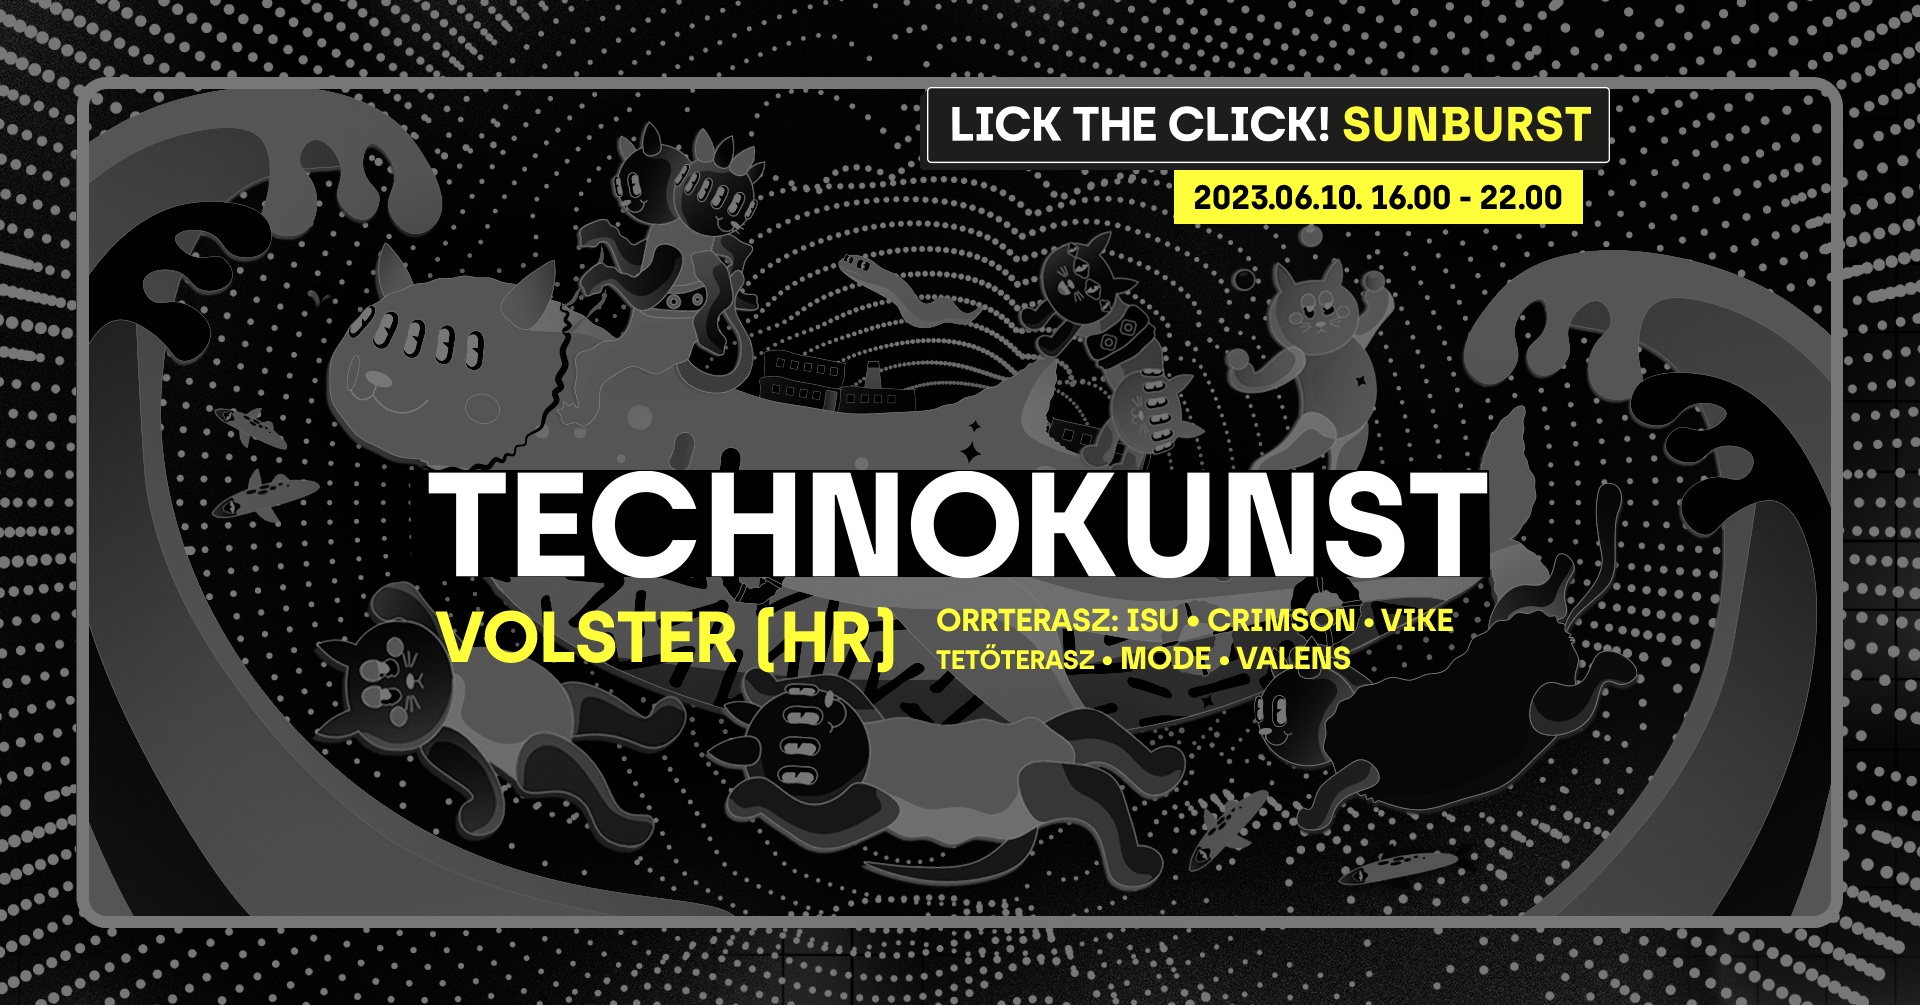 Lick the Click! Sunburst x Technokunst - フライヤー表